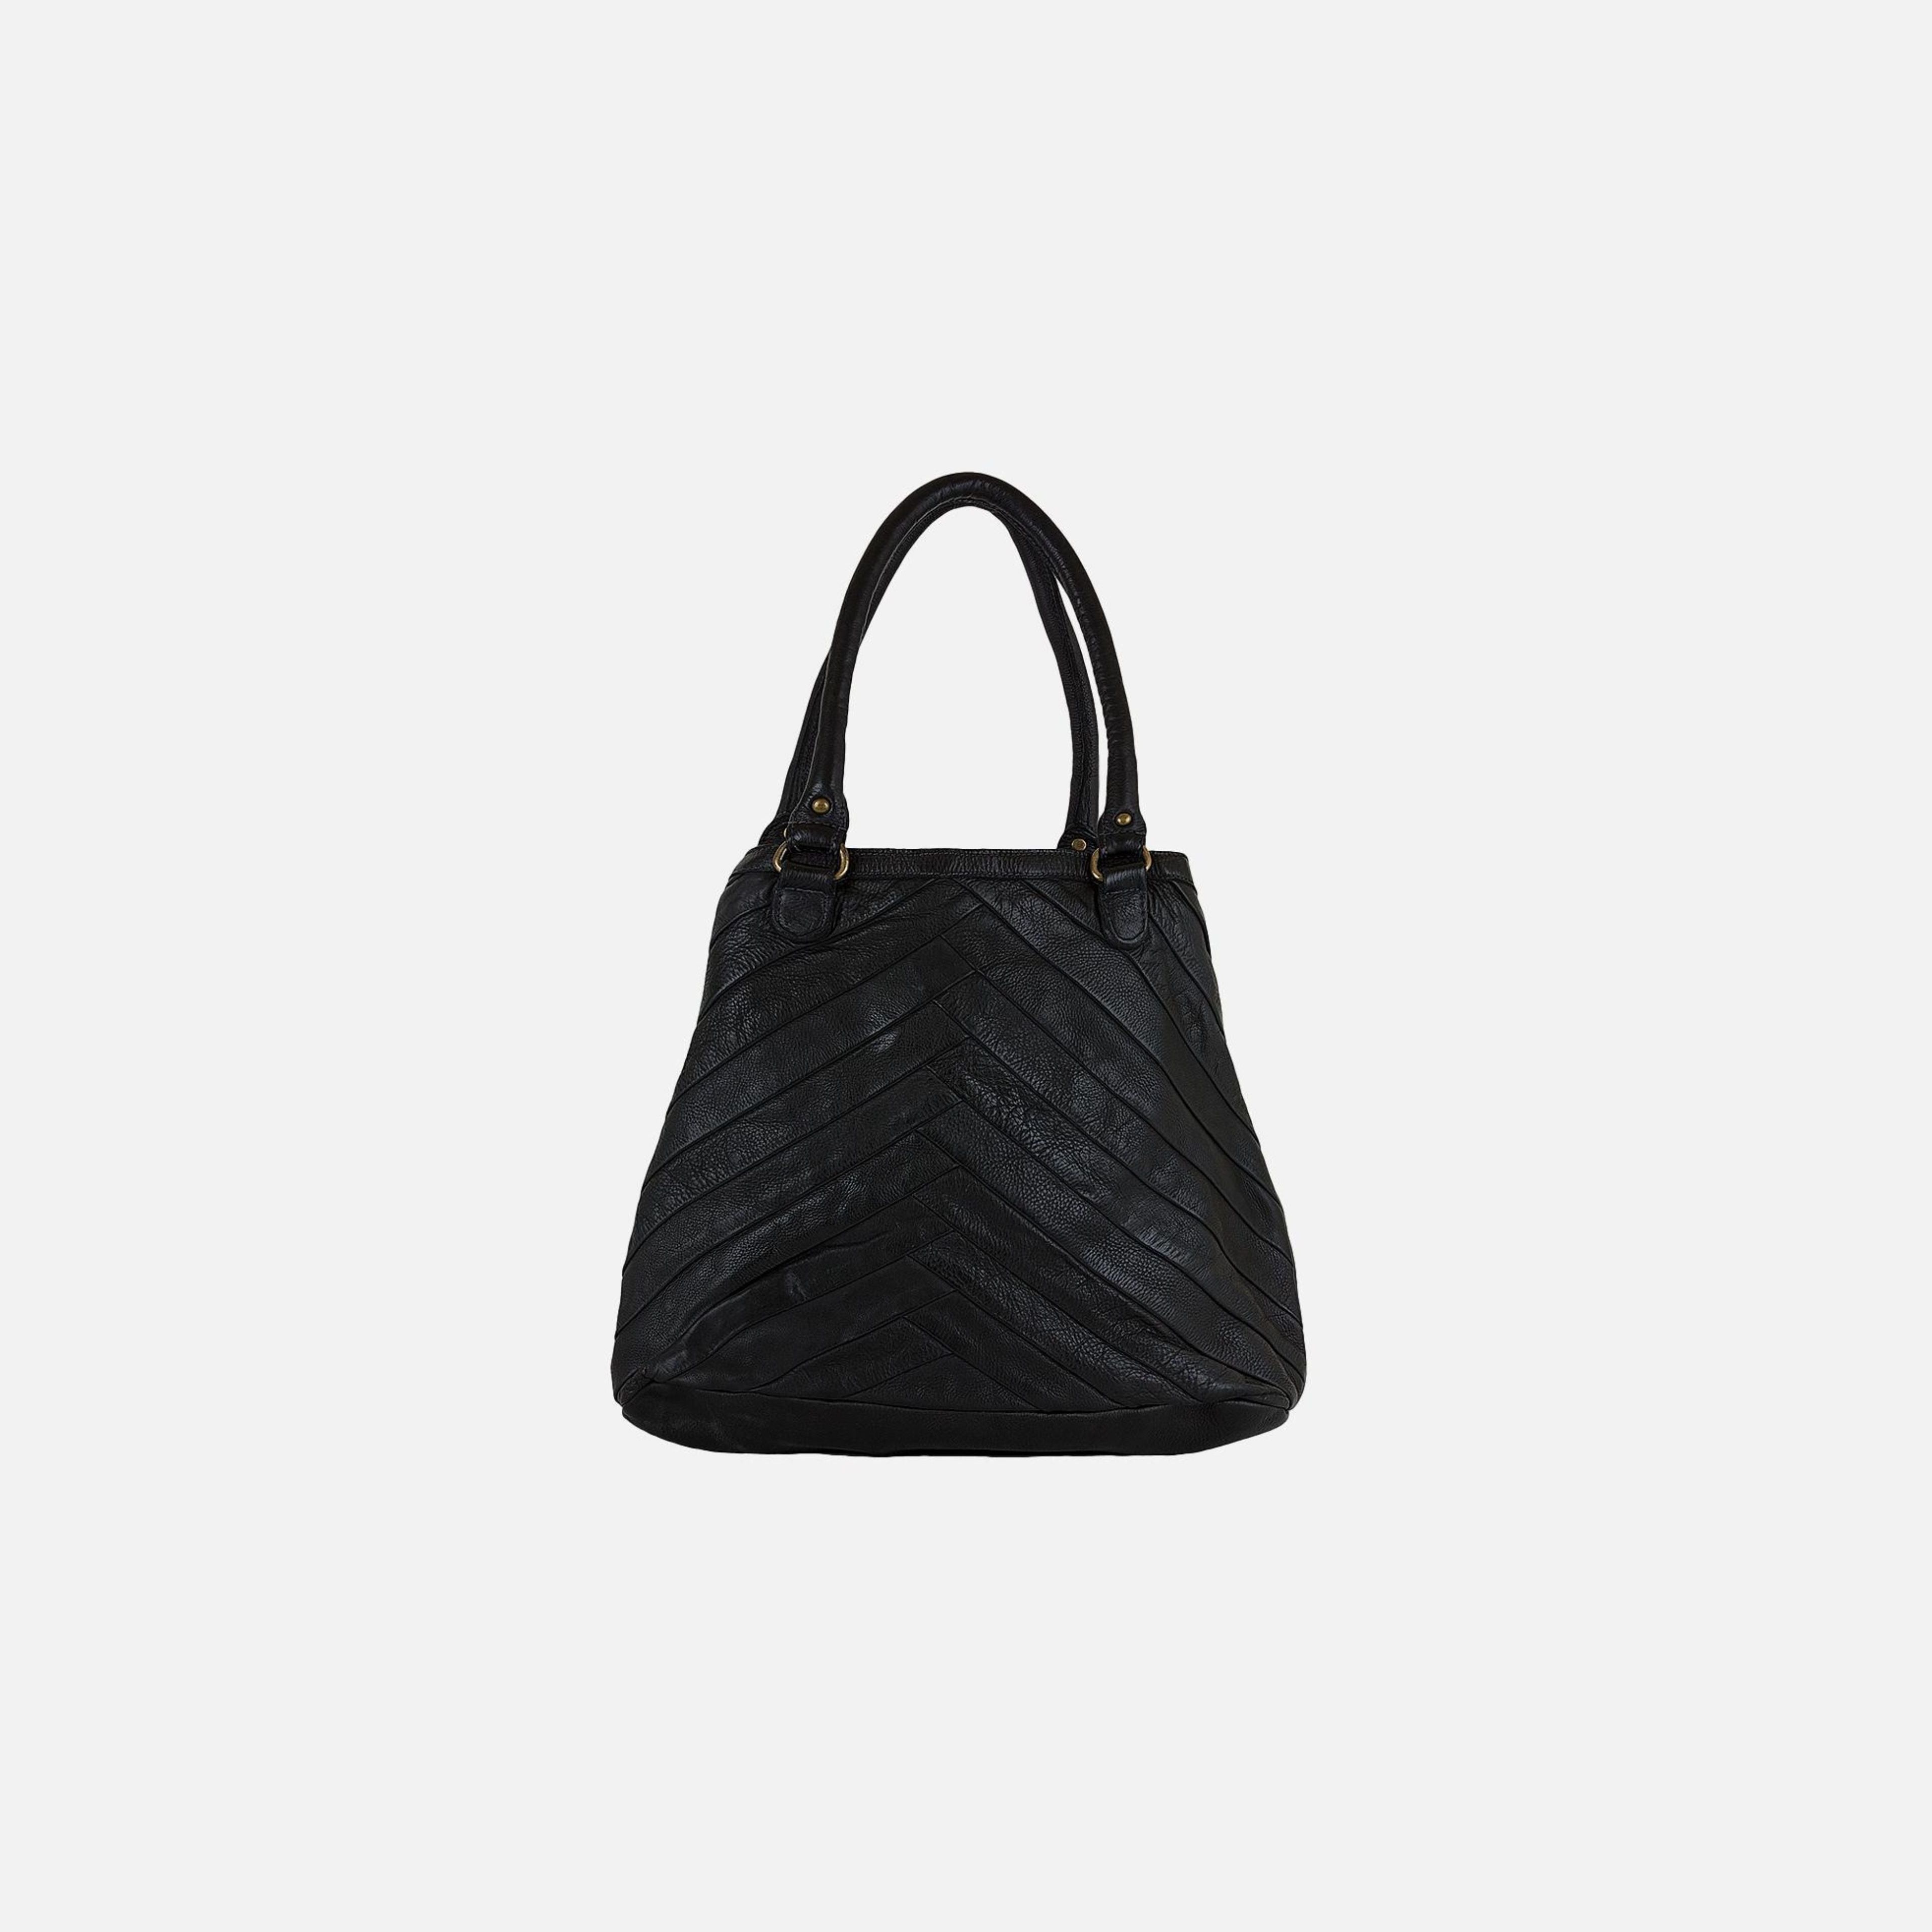 Kalter | Convertible Tote Bag